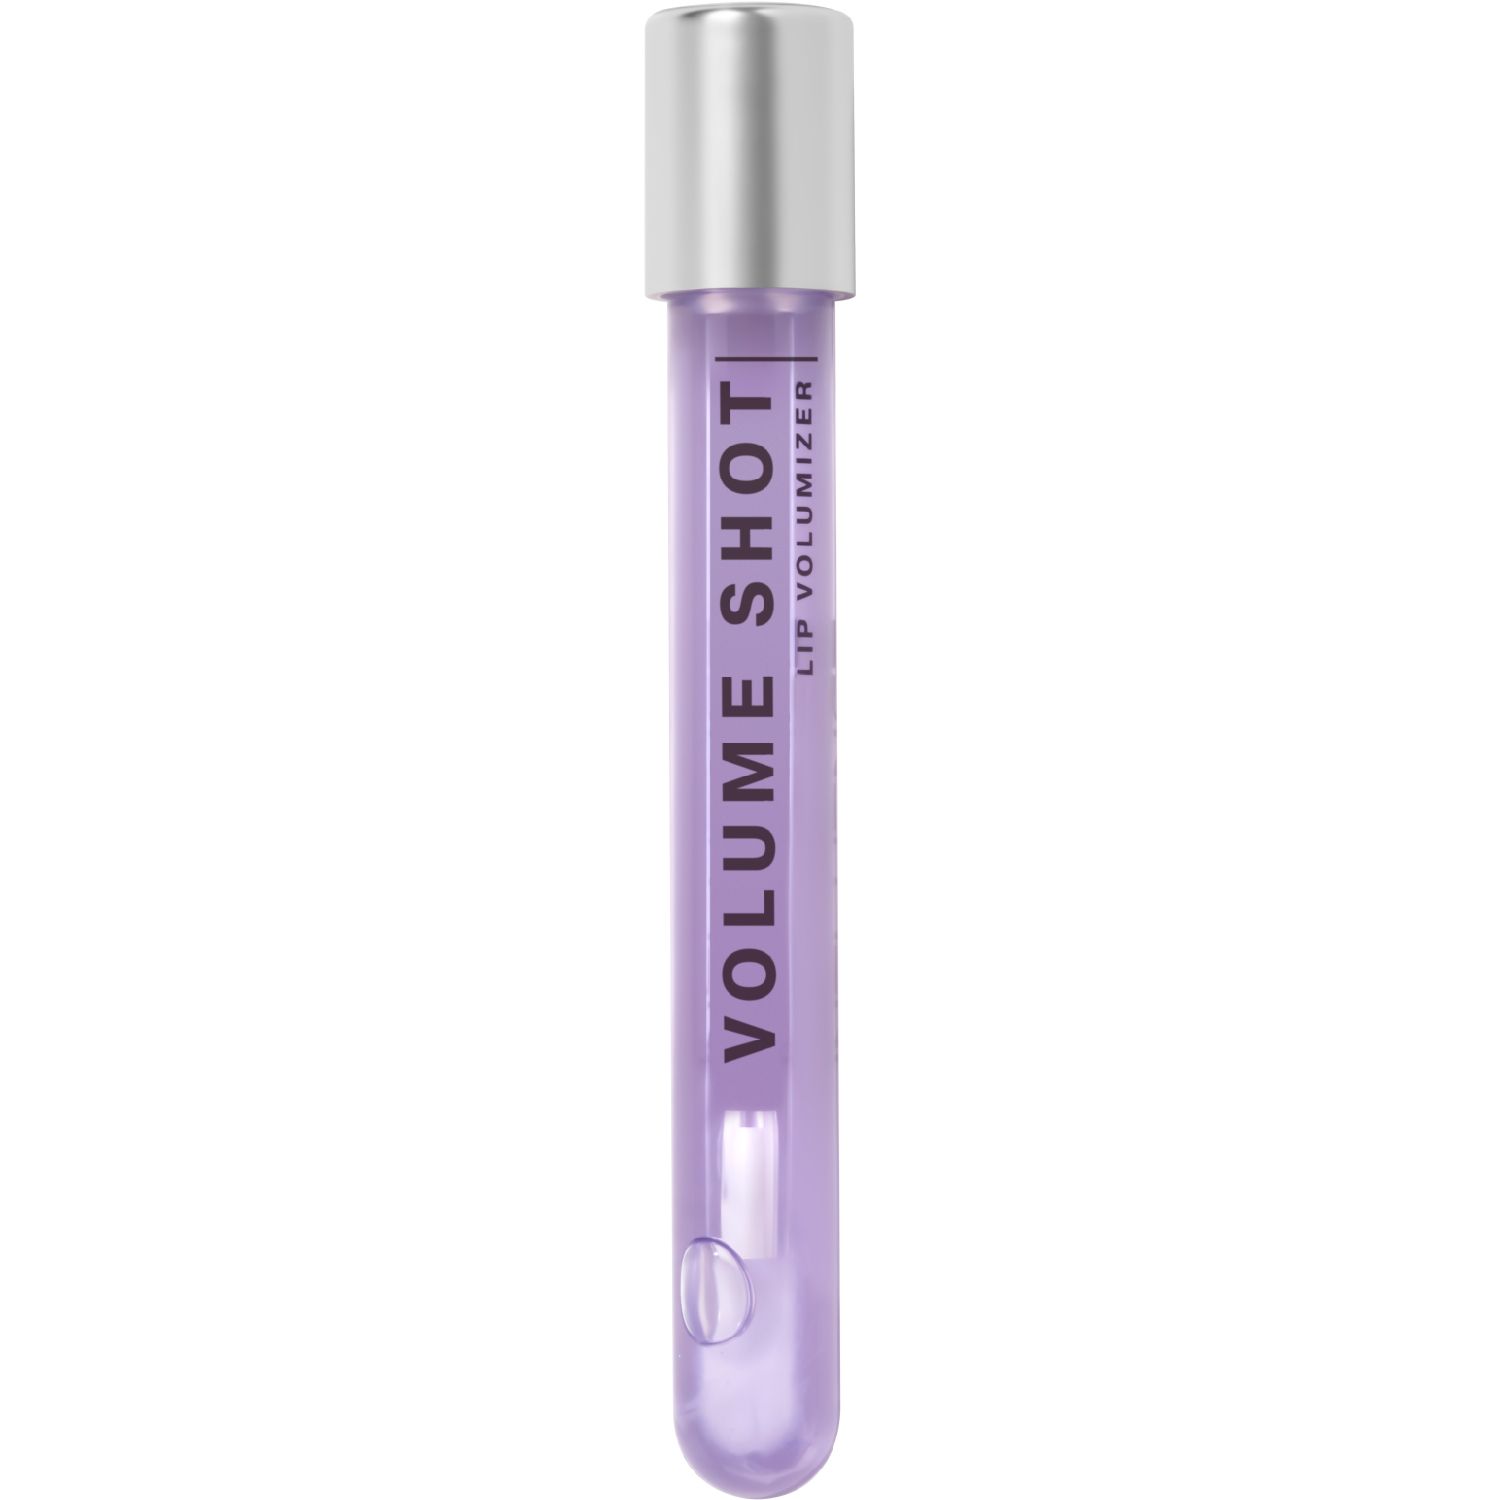 Блеск для губ Influence Beauty Volume Shot увлажняющий, 01 полупрозрачный фиолетовый, 6 мл милая леди блеск для губ голографический фиолетовый enchantimals